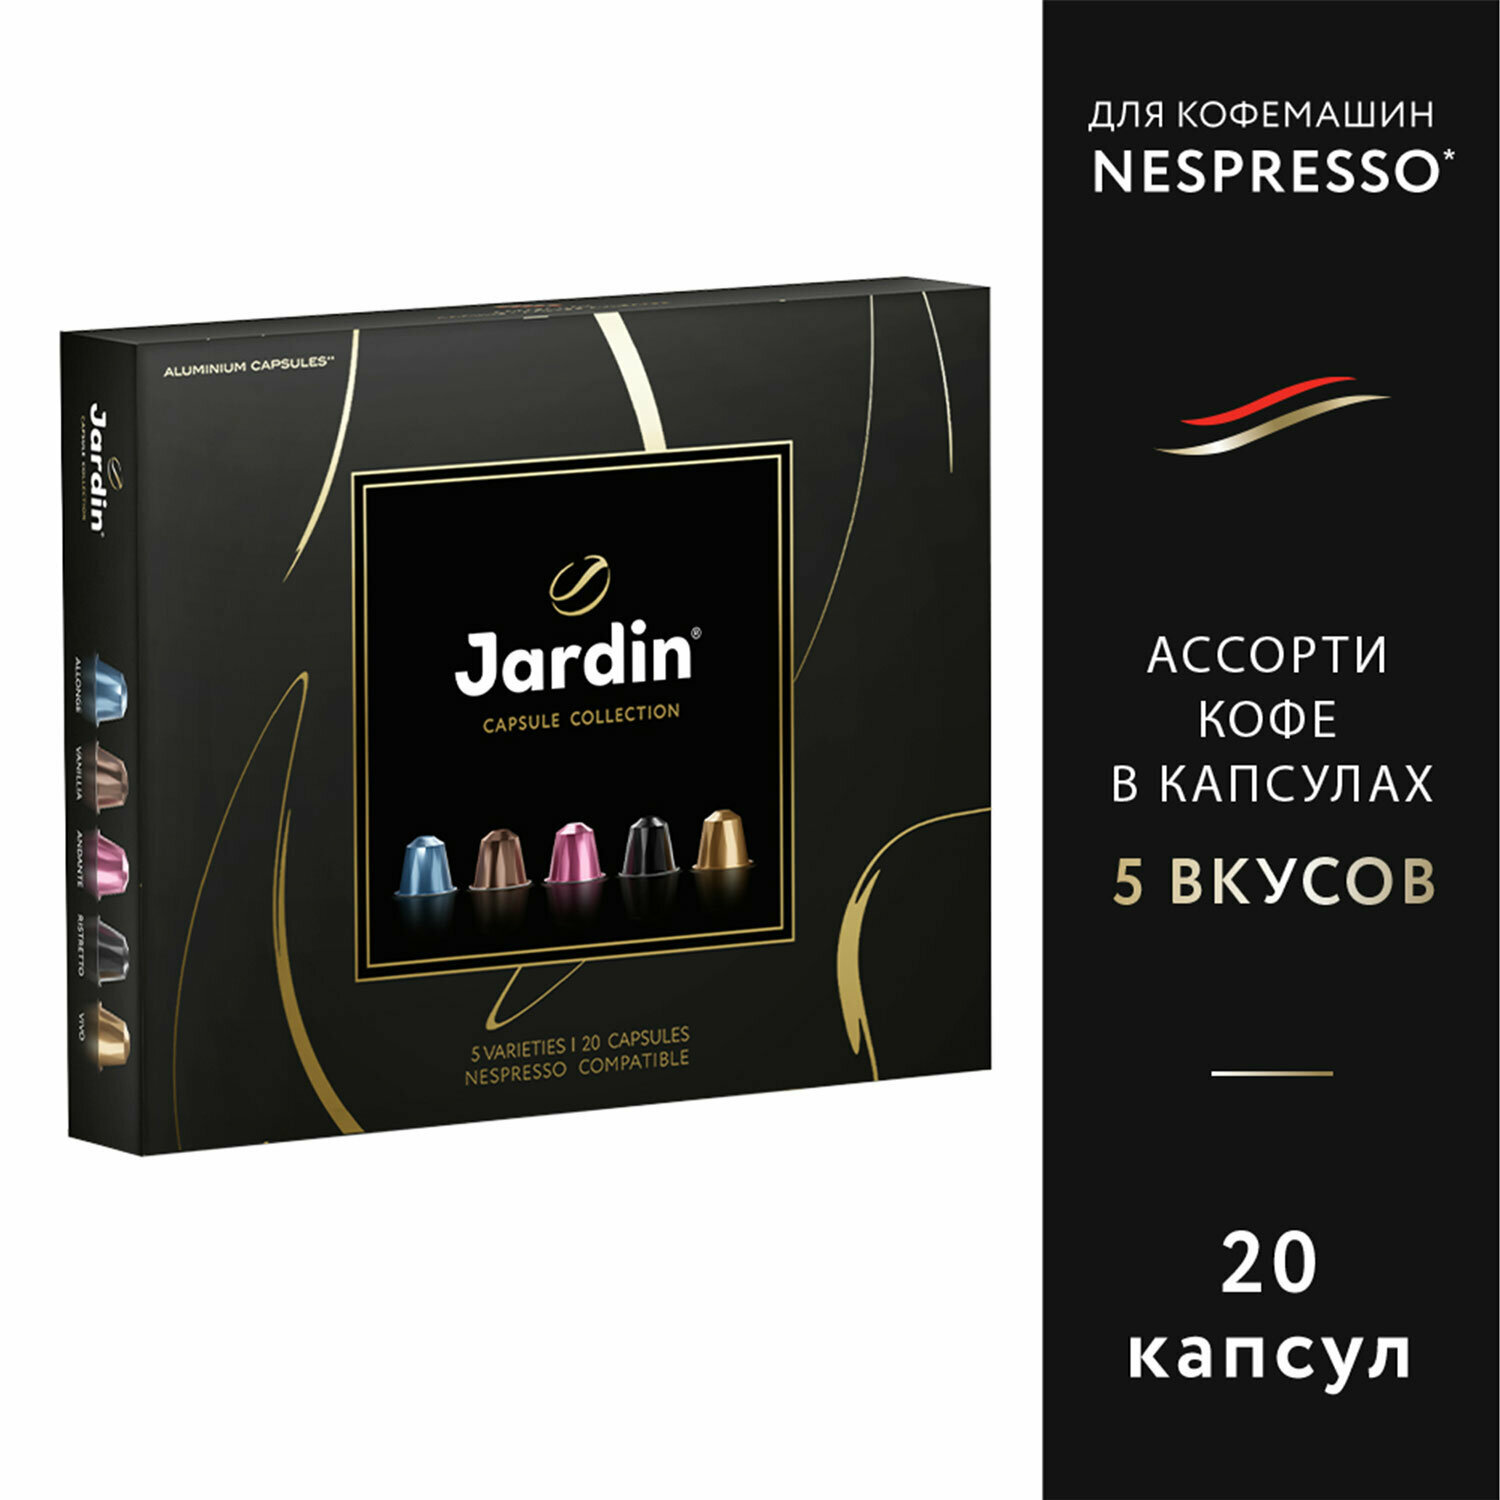 Кофе в капсулах, 20 порций, ассорти 5 вкусов, для Nespresso, JARDIN "Capsule collection", 1492-10 2 шт .